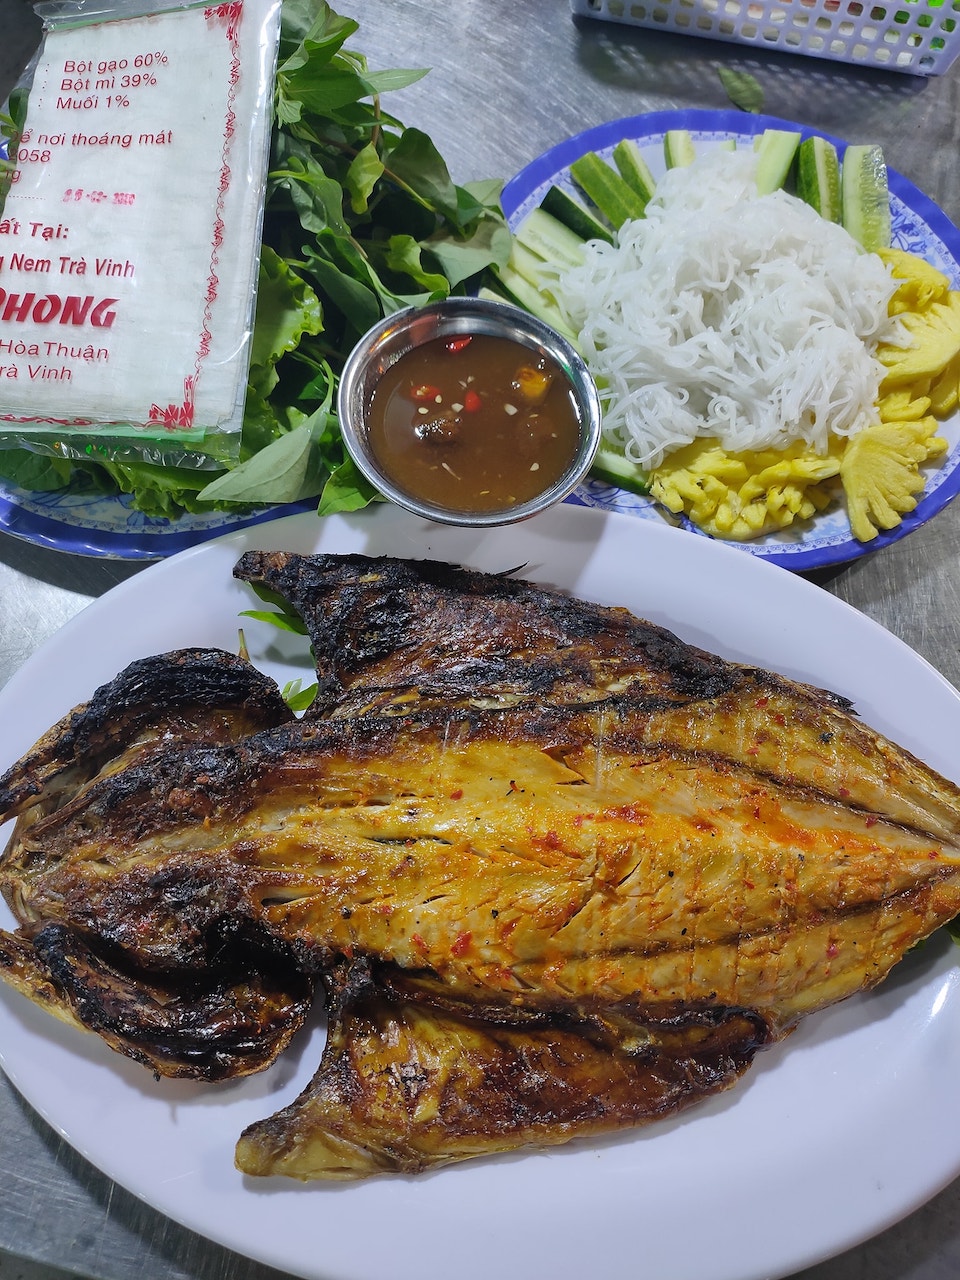 No nê căng cả bụng với bữa hải sản thơm ngon tại Quán Thái Nướng 13